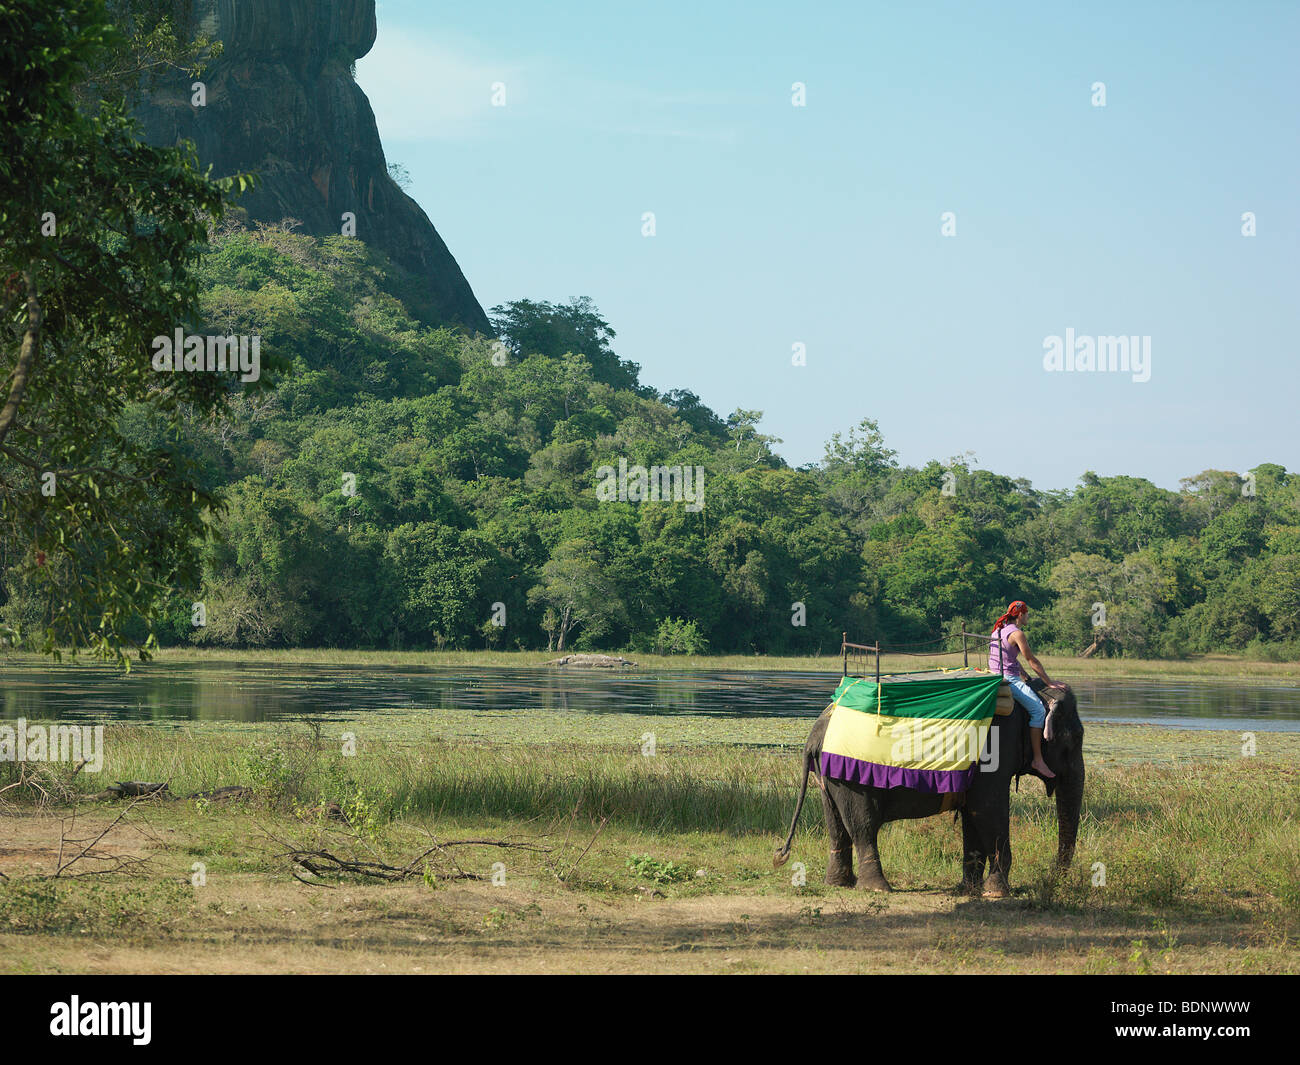 Jeune homme sur elephant par river, rock formation in background Banque D'Images